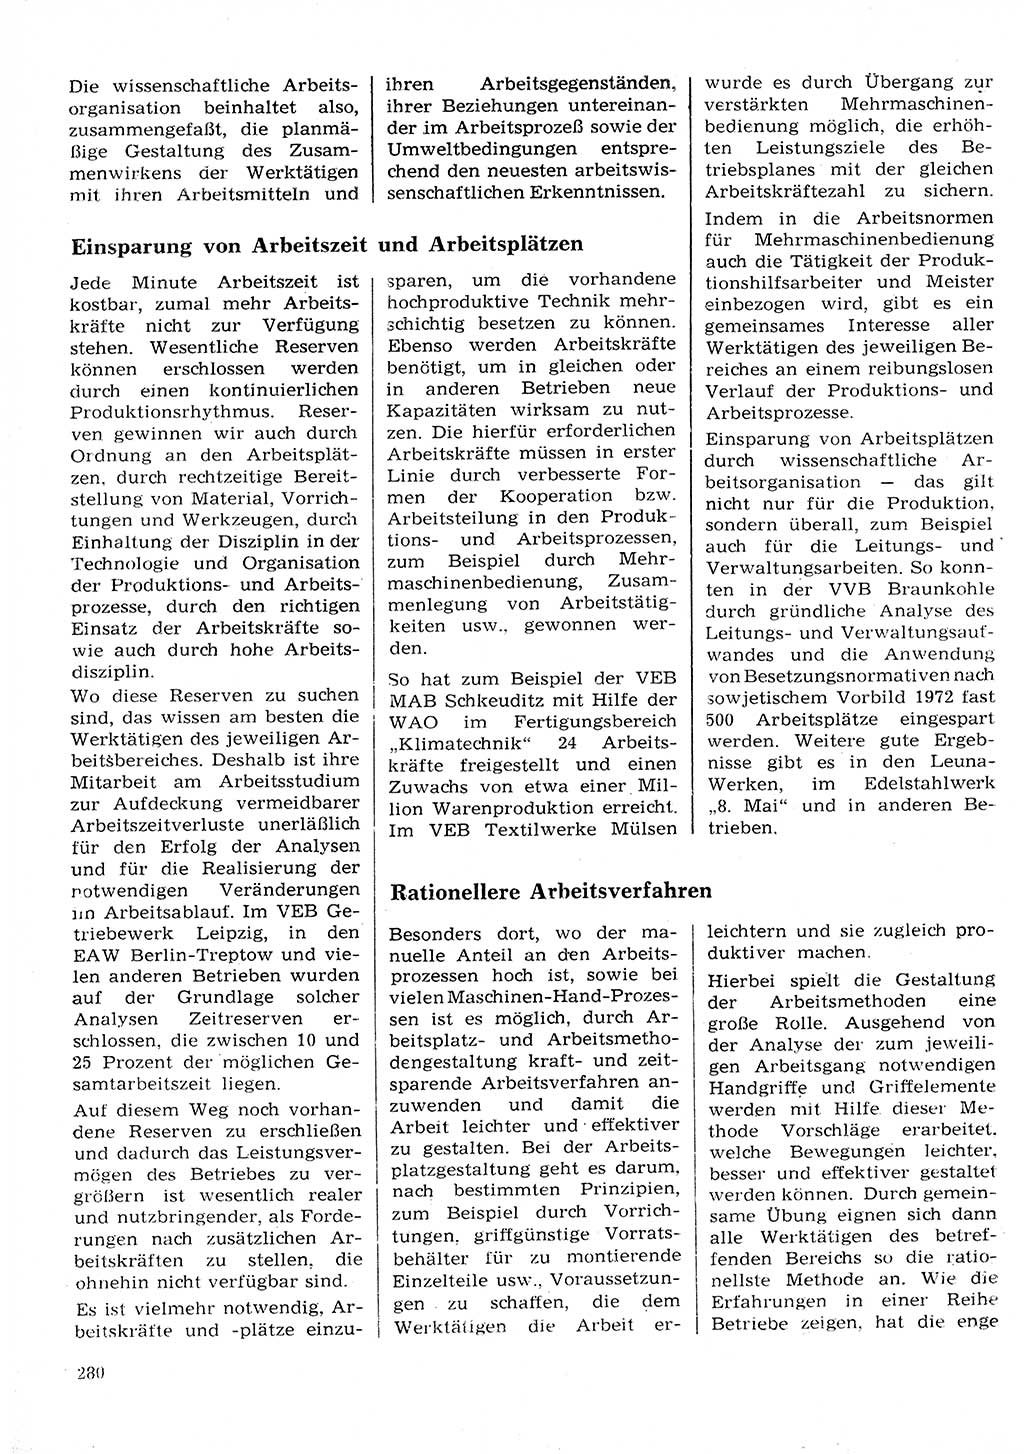 Neuer Weg (NW), Organ des Zentralkomitees (ZK) der SED (Sozialistische Einheitspartei Deutschlands) für Fragen des Parteilebens, 28. Jahrgang [Deutsche Demokratische Republik (DDR)] 1973, Seite 280 (NW ZK SED DDR 1973, S. 280)